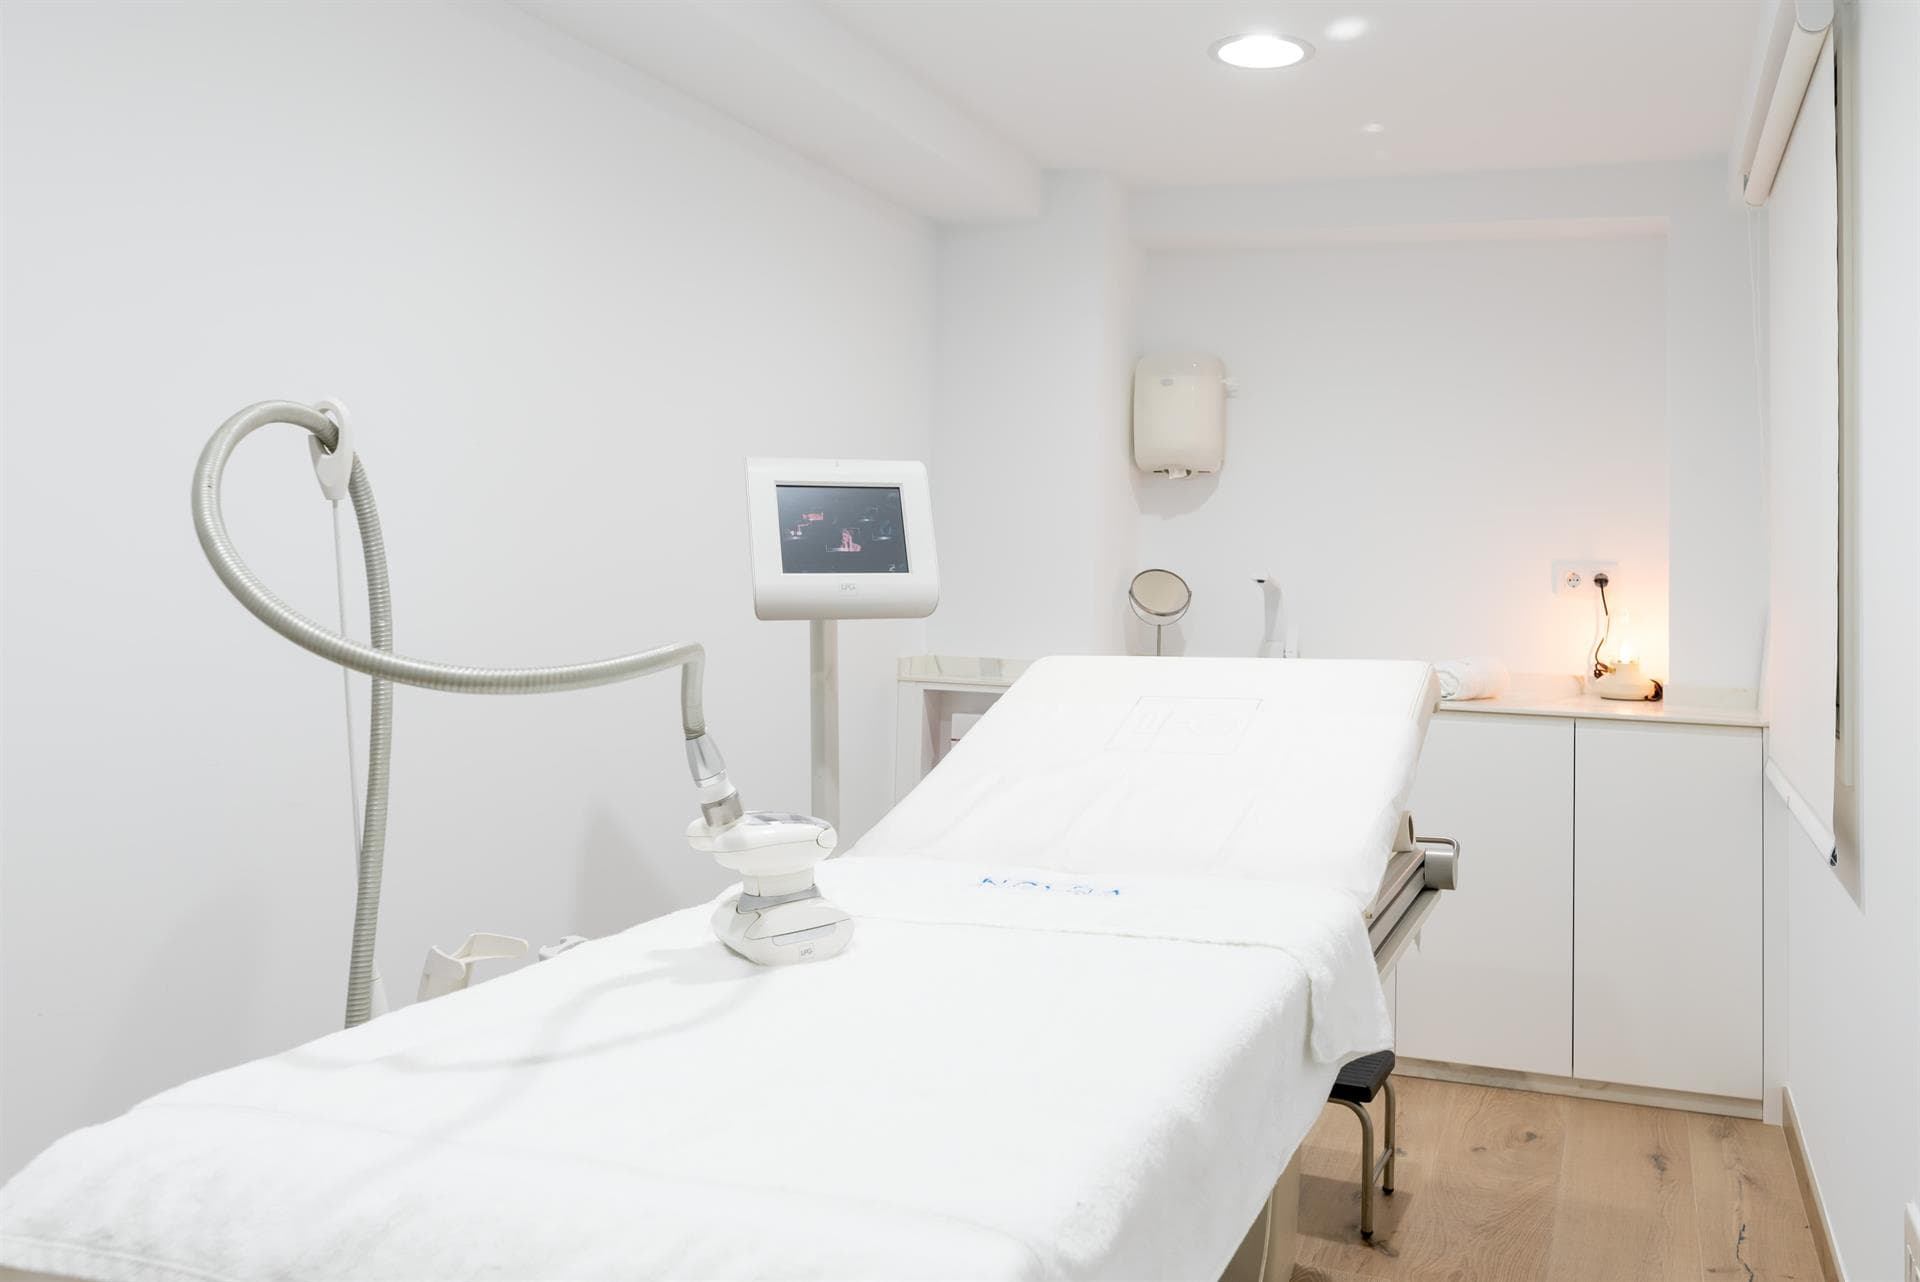 Cirugía íntima - Labioplastia en Vigo, A Coruña y Santiago